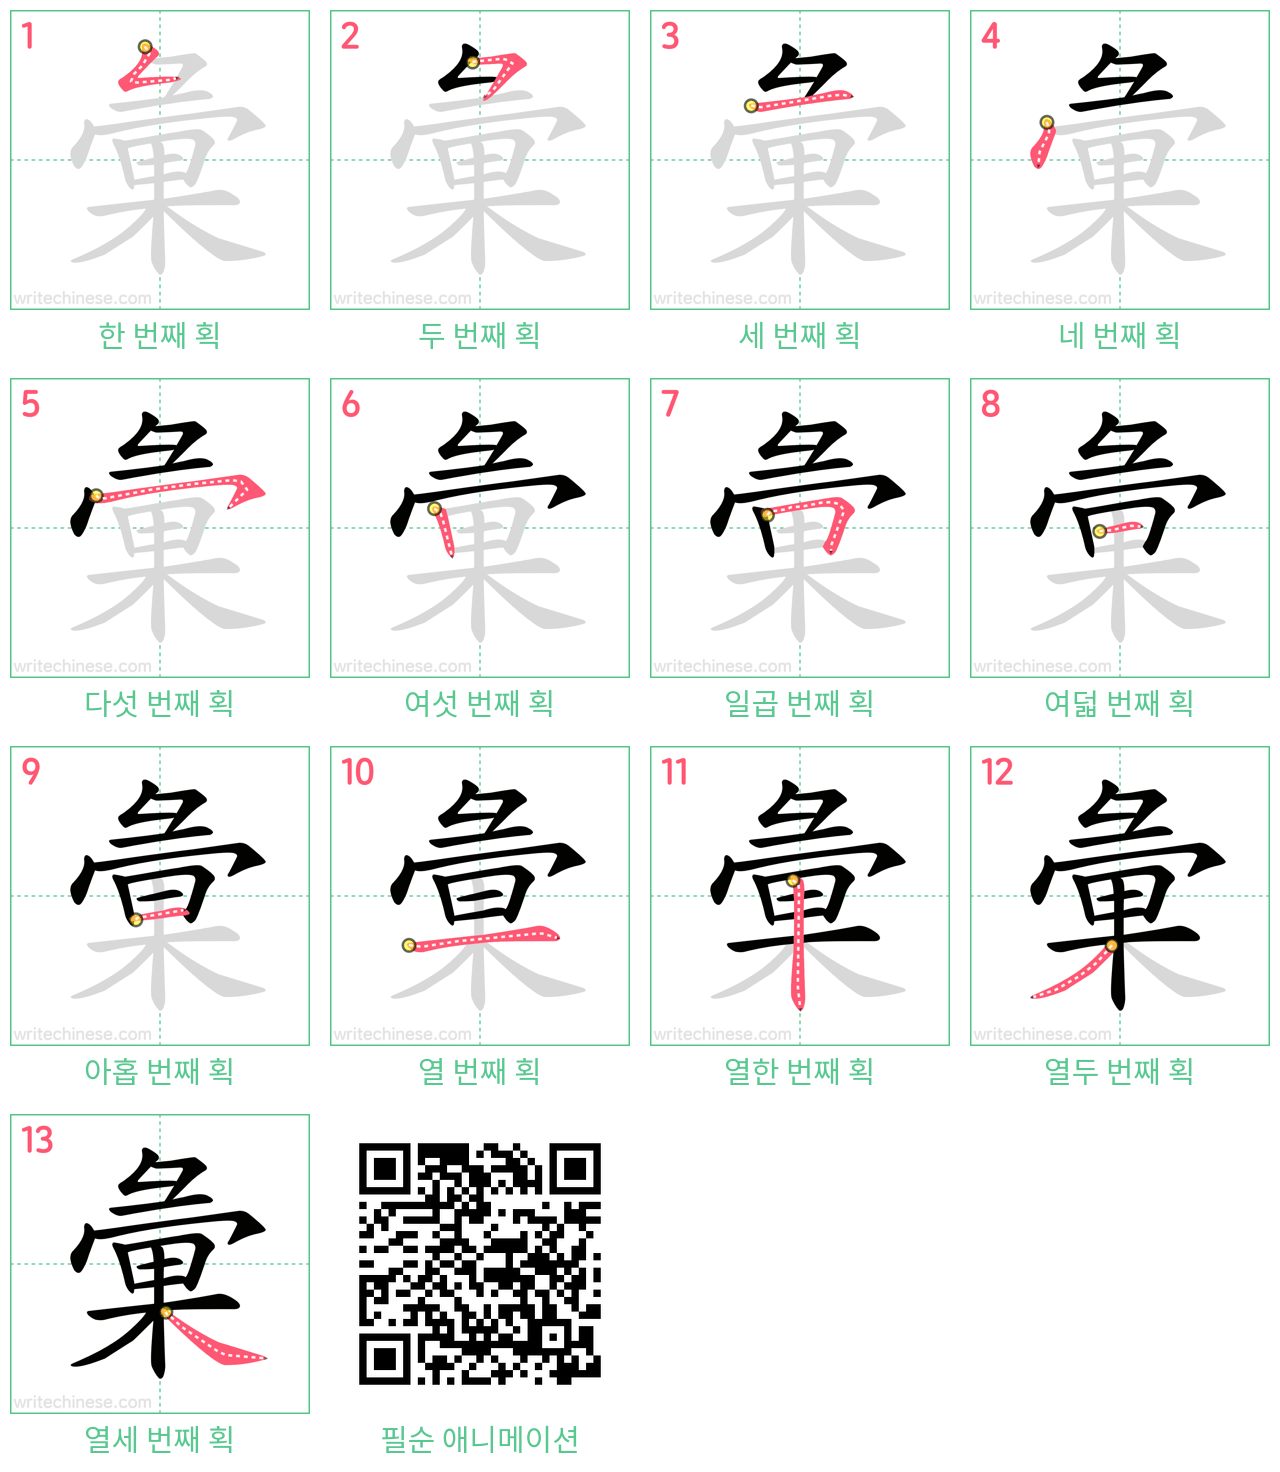 彙 step-by-step stroke order diagrams